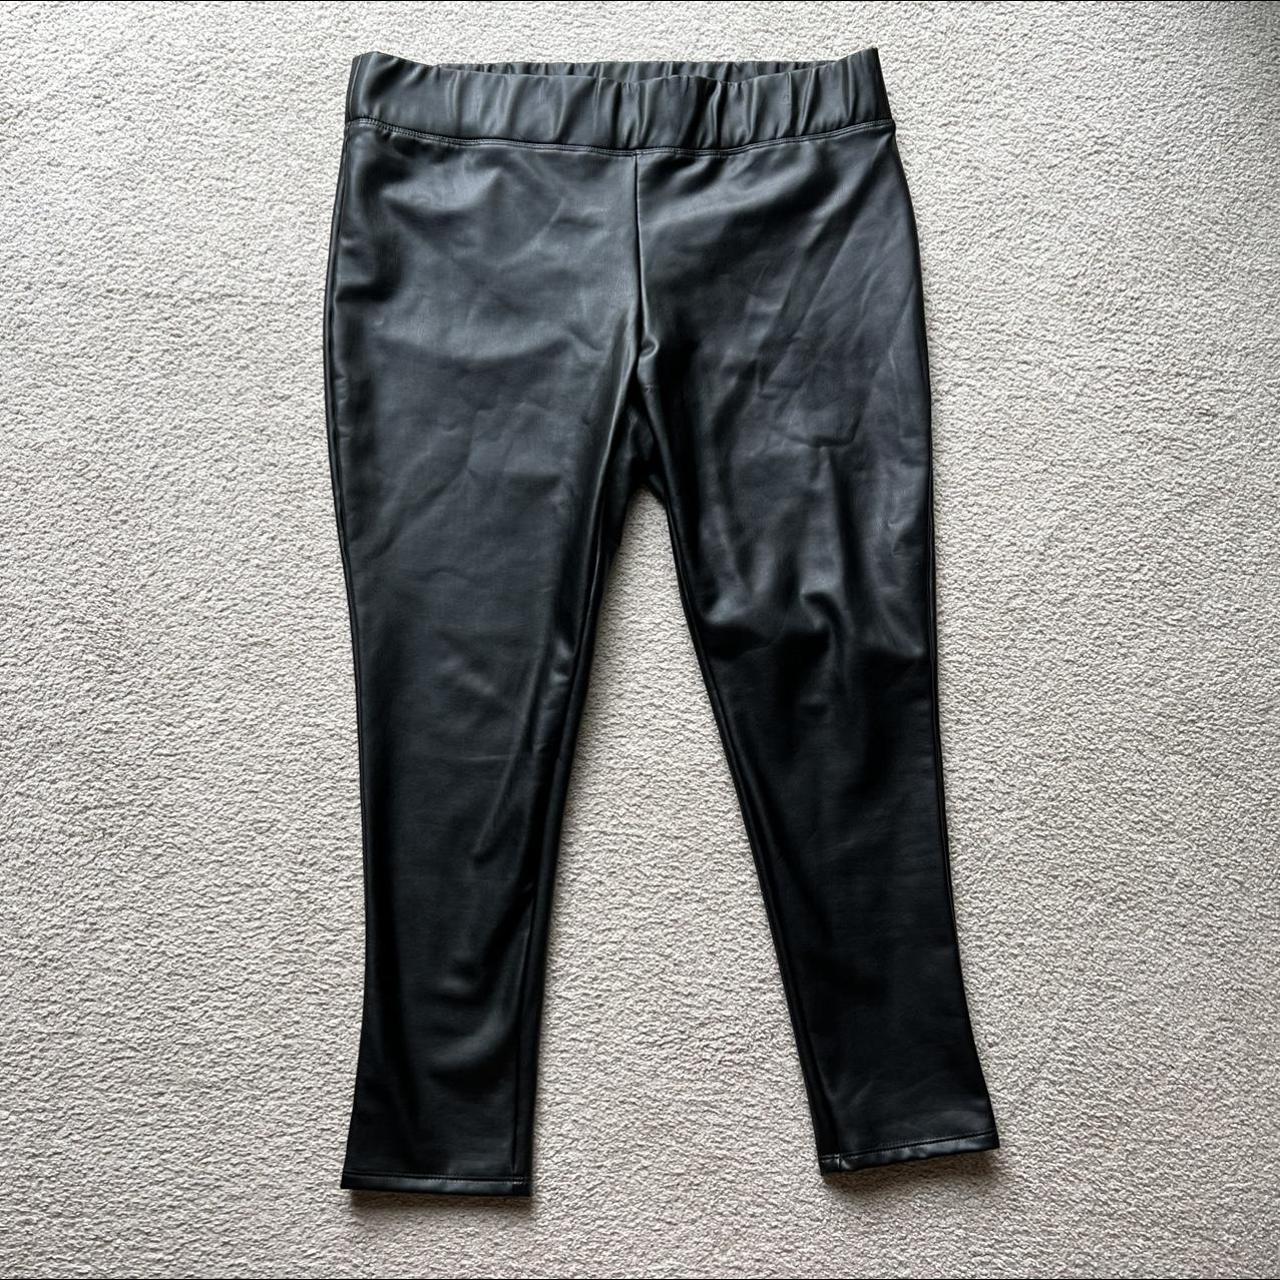 Women's Mixit Faux Leather Leggings Pants Black - Depop